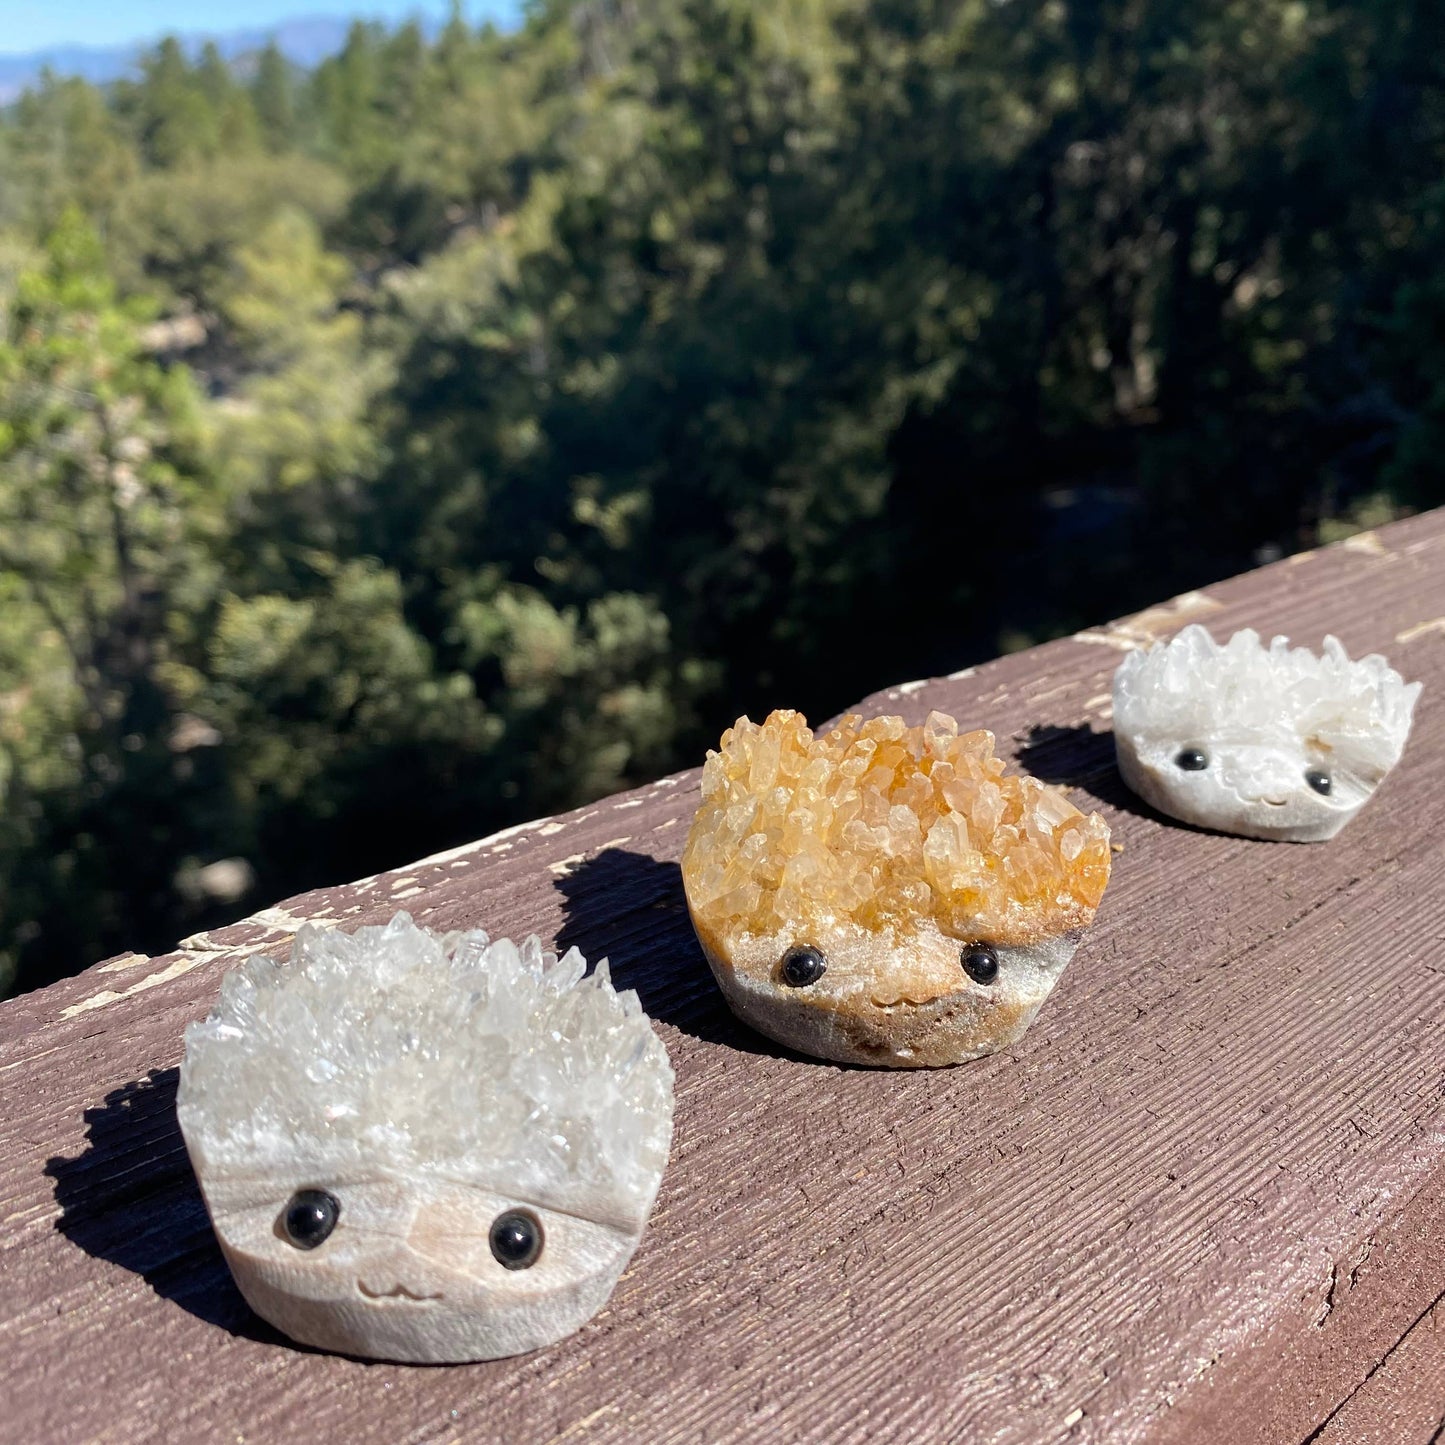 Sparkle Geode Buddies & Crystal Cluster Rock Friends 💎✨: Medium